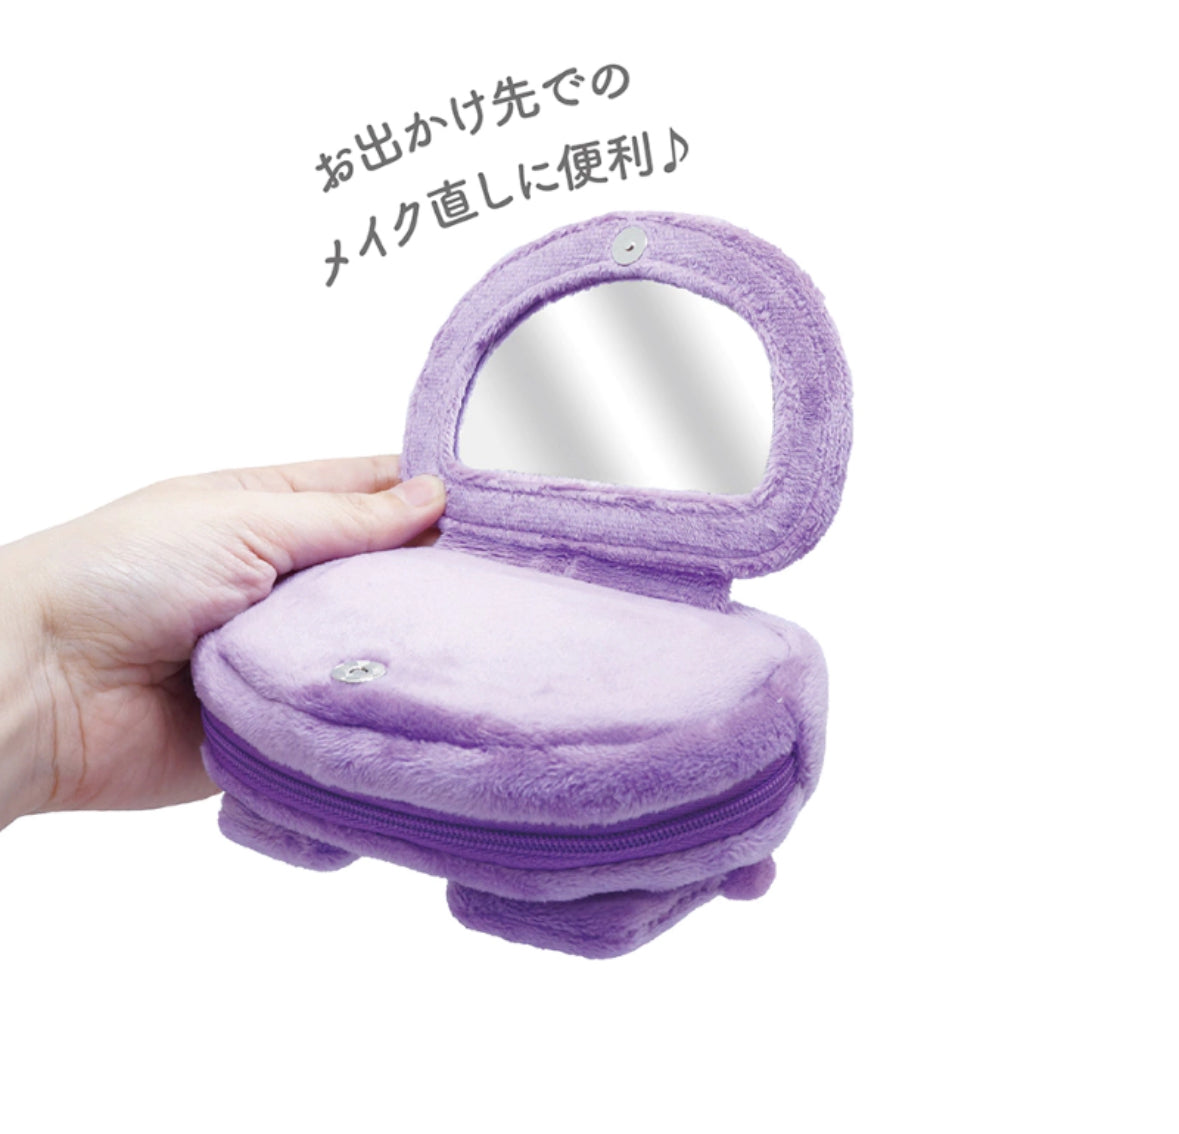 日本三麗鷗造型鏡子化妝包